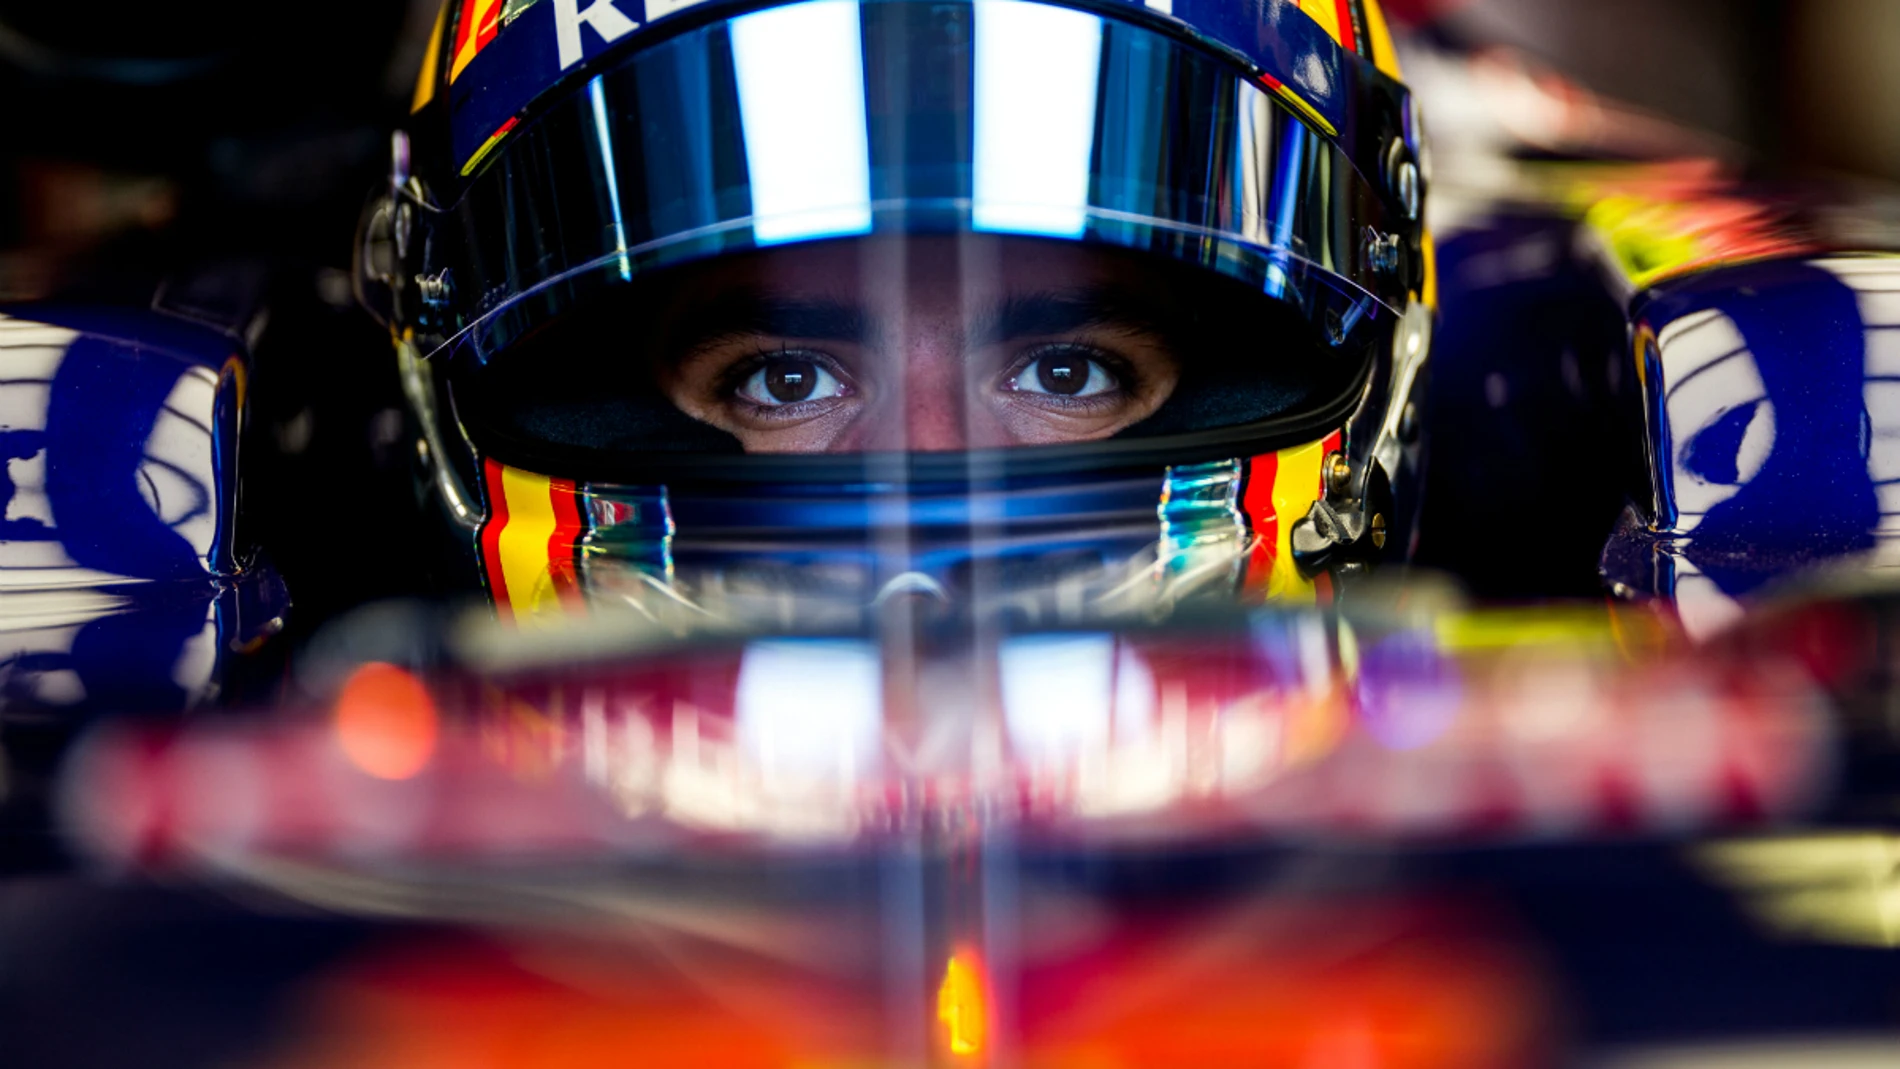 Carlos Sainz, concentrado dentro de su Toro Rosso